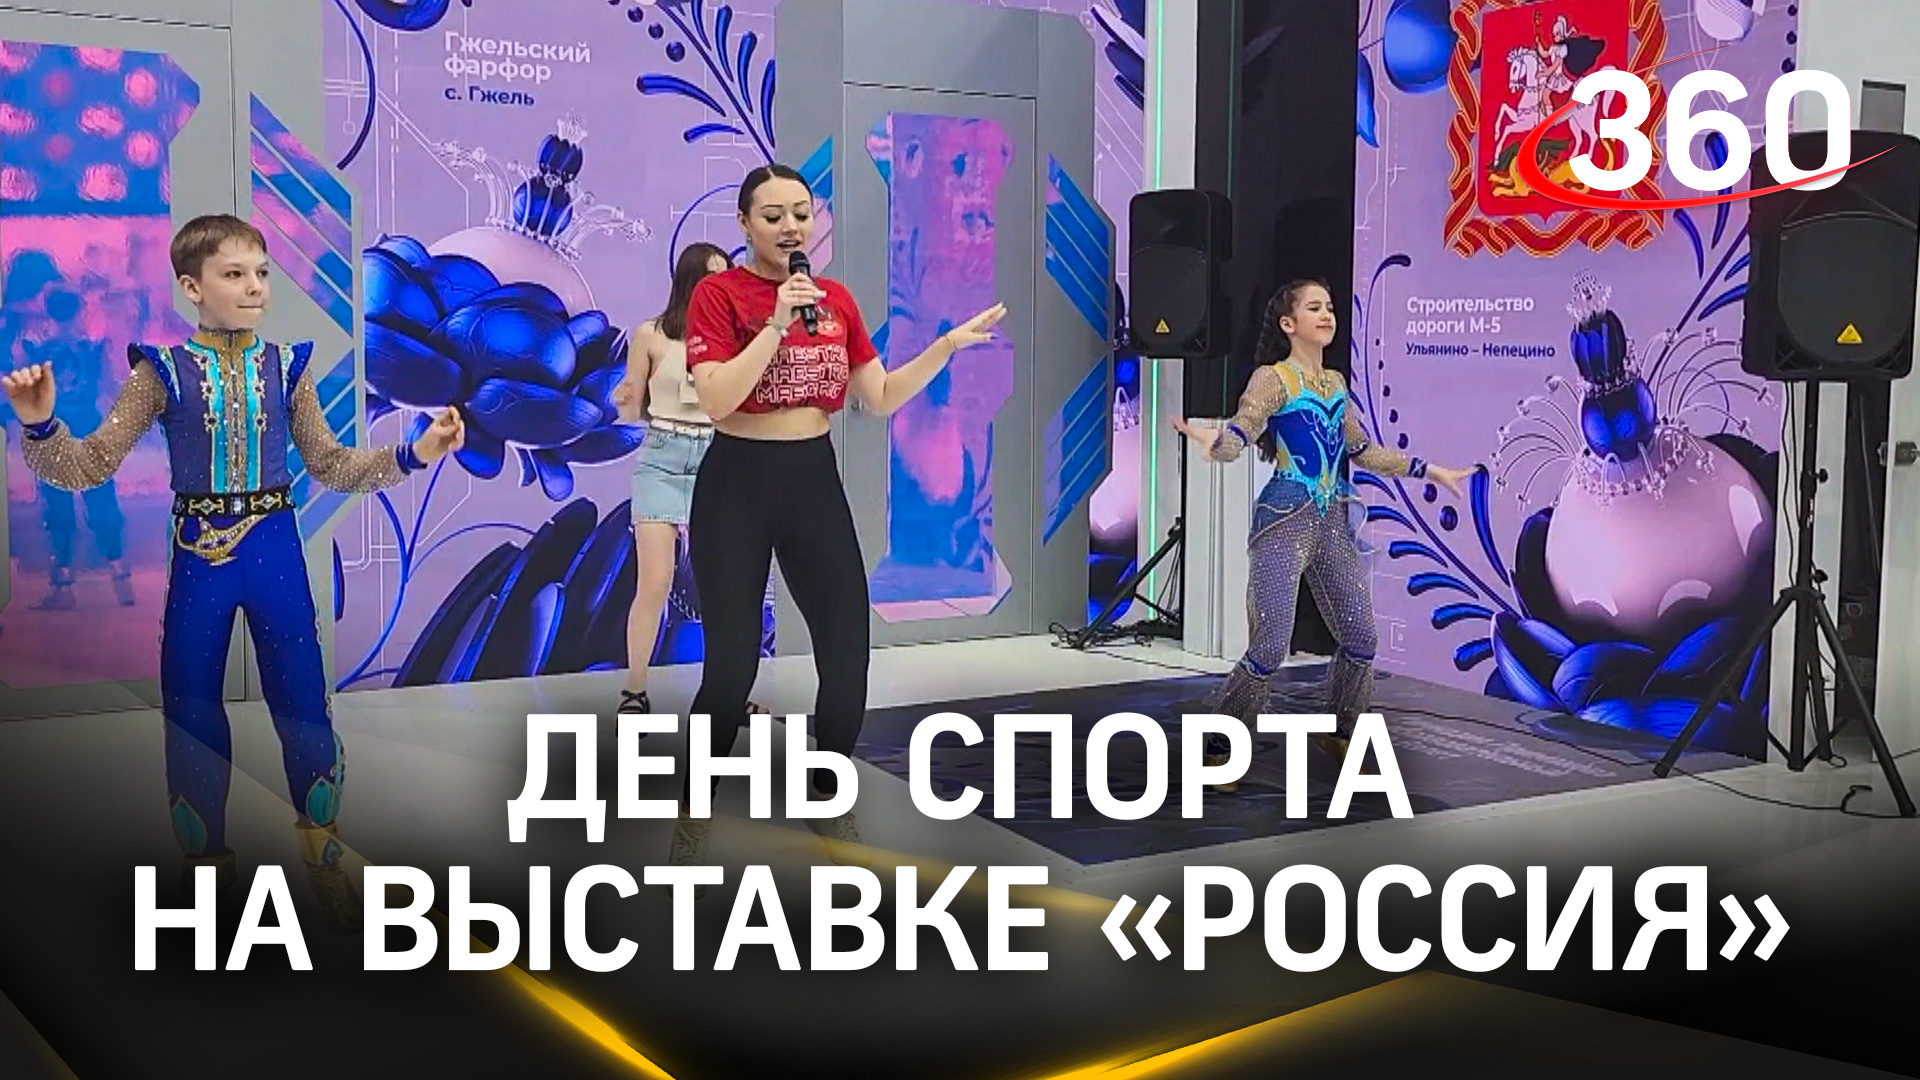 Робот поёт песни Бернеса, а гости играют в бадминтон: что за событие на выставке «Россия» на ВДНХ?